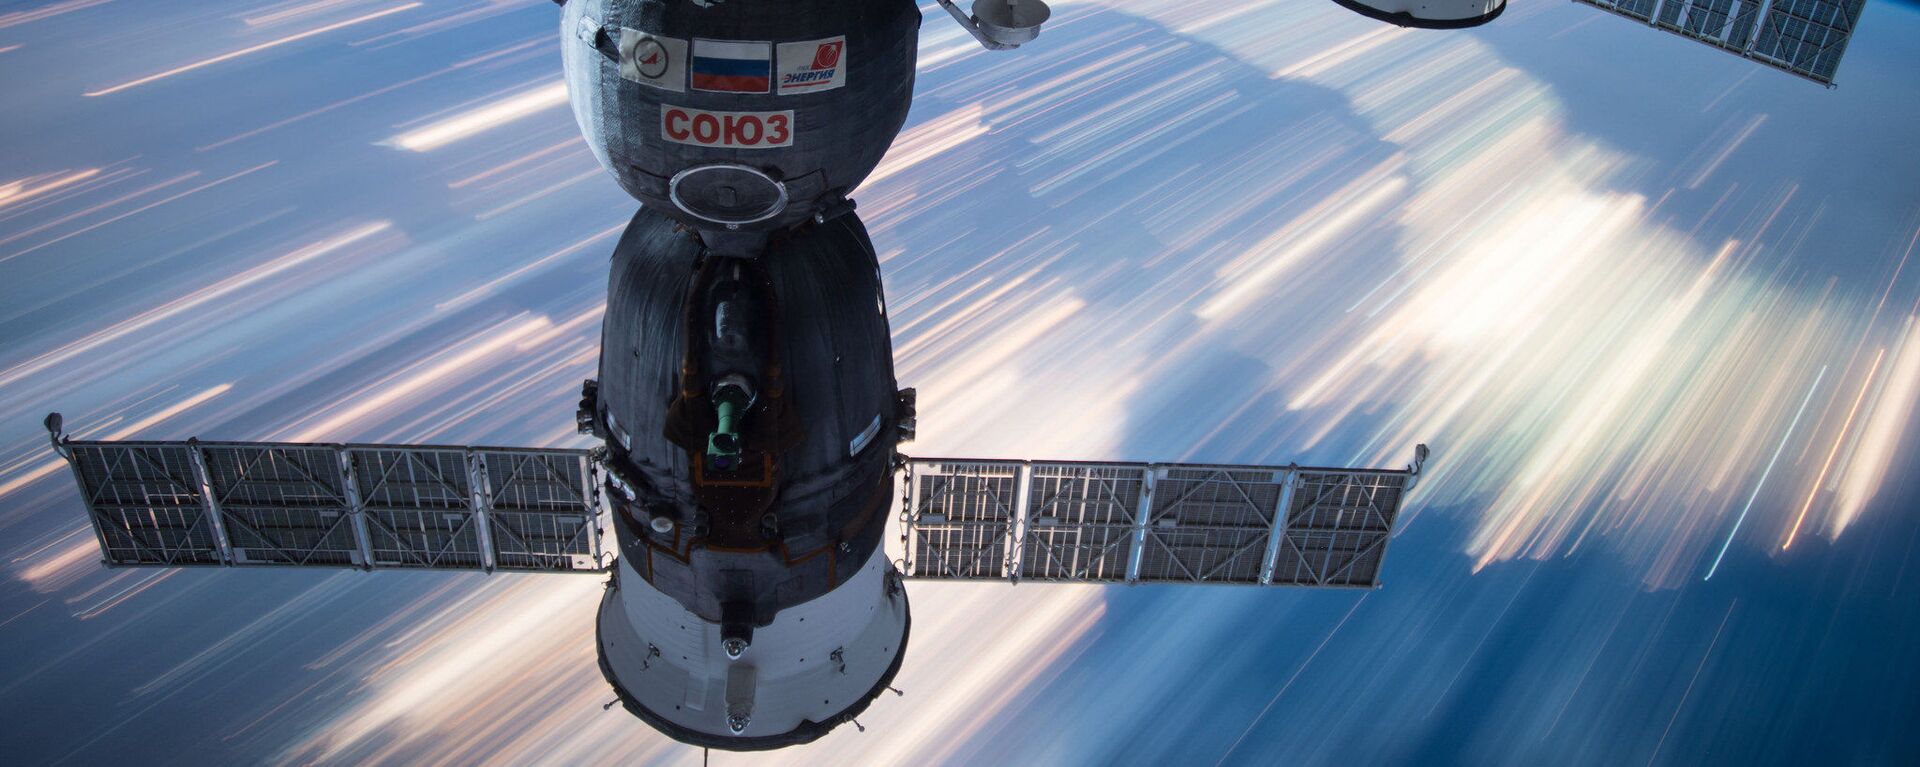 Ruski svemirski brodovi Sojuz i Progres priključeni na Međunarodnu svemirsku stanicu - Sputnik Srbija, 1920, 26.07.2022